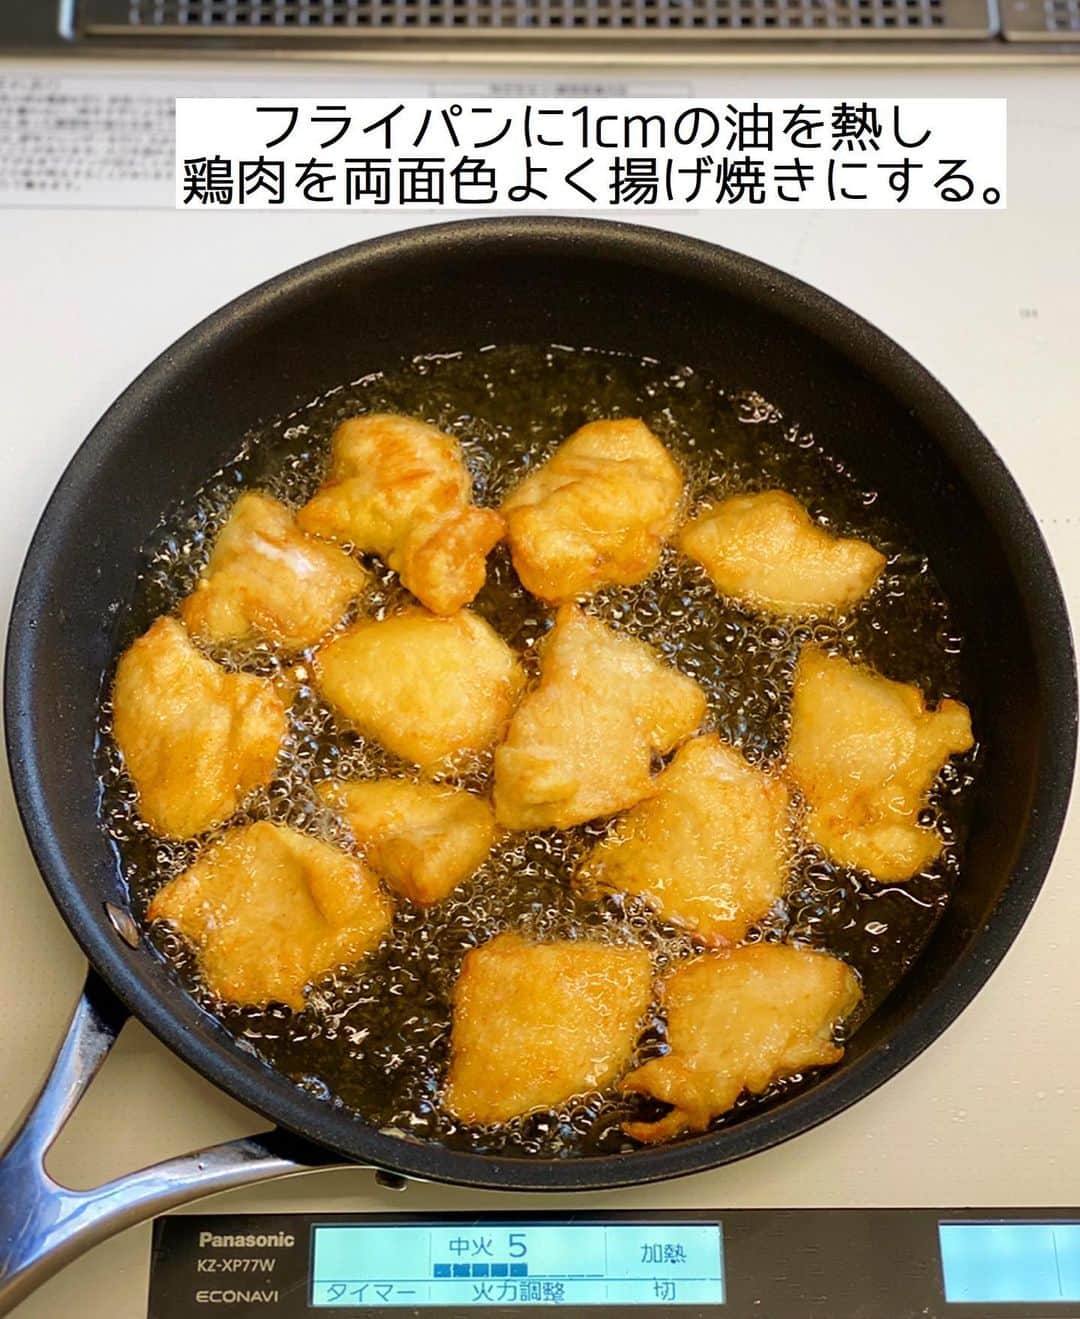 Mizuki【料理ブロガー・簡単レシピ】さんのインスタグラム写真 - (Mizuki【料理ブロガー・簡単レシピ】Instagram)「・﻿ 【#レシピ 】ーーーーーーーーー﻿ ♡鶏むね肉の唐揚げ甘酢あん♡﻿ (2品献立提案あり)﻿ ーーーーーーーーーーーーーーー﻿ ﻿ ﻿ ﻿ おはようございます(*^^*)﻿ ﻿ 2週間#まる得マガジン をご覧いただき﻿ ありがとうございました🙇‍♀️﻿ #ホットケーキミックス の魅力を﻿ お伝えできていたら嬉しいです☺️﻿ (おおらかな武田さんに反して﻿ 私のガチガチ感•••😅)﻿ ﻿ 昨夜で本放送は終わりましたが﻿ 現在早くも再放送が始まっていますので﻿ 引き続きホケミスイーツをお楽しみ下さいね💕﻿ (再放送はNHK Eテレ 昼11:55〜)﻿ ﻿ ﻿ ﻿ ﻿ ﻿ ﻿ さて、レシピです📕﻿ ﻿ 今日ご紹介させていただくのは﻿ 鶏むね肉の節約おかず♩﻿ フライパンで揚げ焼きにして﻿ 食欲そそる甘酢あんをからめました♡﻿ 甘酢あんはレンチンするだけの﻿ 簡単お手軽レシピです(*´艸`)﻿ ﻿ パサつきがちな鶏むね肉も﻿ しっとり柔らかく仕上がりますよ〜♩﻿ よかったらお試し下さいね(*^^*)﻿ ﻿ ﻿ ﻿ ＿＿＿＿＿＿＿＿＿＿＿＿＿＿＿＿＿＿＿＿﻿ 【2人分】﻿ 鶏むね肉...大1枚(300g)﻿ ●酒・マヨネーズ...各大1﻿ ●片栗粉...大3﻿ ☆醤油・酢...各大1.5﻿ ☆砂糖...大1﻿ サラダ油・レタス...各適量﻿ ﻿ 1.鶏肉は全体をフォークで刺して1cm厚さの削ぎ切りにし、ポリ袋に入れて●を揉み込む。耐熱ボウルに☆を入れ、600Wのレンジで1分加熱する。﻿ 2.フライパンに1cmのサラダ油を中火で熱し、鶏肉を両面色よく揚げ焼きにする。(約5分)﻿ 3.火が通ったら油を切り、1のボウルに入れてからめる。器にレタスと盛り合わせる。﻿ ￣￣￣￣￣￣￣￣￣￣￣￣￣￣￣￣￣￣￣￣﻿ ﻿ ﻿ ﻿ 《ポイント》﻿ ♦︎鶏肉になるべく衣をたっぷりからめてフライパンに入れて下さい♩﻿ ♦︎タルタルソースをかけるとチキン南蛮風になります♩﻿ ﻿ ﻿ ﻿ ﻿ ﻿ ﻿ ＿＿＿＿＿＿＿＿＿＿＿＿＿＿＿﻿ 🥣🥣🥣2品献立提案🥣🥣🥣﻿ ￣￣￣￣￣￣￣￣￣￣￣￣￣￣￣﻿ 【合間に作れるおすすめ副菜】﻿ >厚揚げの煮物(P.33)﻿ >人参マカロニサラダ(P.89)﻿ (#Mizukiの2品献立 より)﻿ ﻿ 【献立の段取り】﻿ 副菜をレンジに入れてから﻿ メインを揚げ焼きにする🥢﻿ ﻿ ﻿ ﻿ ﻿ ﻿ ﻿ ﻿ ⭐️発売中⭐️3刷重版が決まりました😭﻿ 本当にありがとうございます(涙)﻿ _____________________________________﻿ \15分でいただきます/﻿ 📕#Mizukiの2品献立 📕﻿ (9月24日発売・マガジンハウス)﻿ ￣￣￣￣￣￣￣￣￣￣￣￣￣￣￣￣￣﻿ ﻿ 忙しい私たちには﻿ 2品くらいがちょうどいい！﻿ 『しんどくない献立、考えました』﻿ ￣￣￣￣￣￣￣￣￣￣￣￣￣￣￣￣﻿ ﻿ ーーーーーPART.1 ーーーーー﻿ 【Mizukiのお墨つき！２品献立ベスト10】﻿ 約15分でできる10献立をご紹介！﻿ メインは全部フライパン、副菜はレンチンor混ぜるだけ♡﻿ ﻿ ーーーーーPART.2 ーーーーー﻿ 【フライパンひとつ！今夜のメインおかず】﻿ 献立の主役になる肉や魚のおかず50品！﻿ Part3の副菜と組み合わせれば﻿ 献立のバリエーションが広がりますよ♩﻿ ﻿ ーーーーー PART.3 ーーーーー﻿ 【合間に作れる！ 野菜別かんたん副菜】﻿ レンチンor和えるだけの副菜レシピを﻿ 素材別にたっぷり収録♩﻿ ﻿ ーーーーー番外編ーーーーー﻿ 【ひとつで満足！ご飯＆麺】﻿ 【具だくさん！おかずスープ】﻿ 【オーブンいらずのおやつレシピ】﻿ ￣￣￣￣￣￣￣￣￣￣￣￣￣￣￣￣￣￣﻿ (ハイライトにリンク🔗あります💗)﻿ ﻿ ﻿ ﻿ ﻿ ＿＿＿＿＿＿＿＿＿＿＿＿＿＿＿＿＿＿﻿ 🔔テレビ出演のお知らせ🔔﻿ 10月12日〜22日までの2週間(月〜木)﻿ 【NHK Eテレ まる得マガジン 】が﻿ 再放送されています☺️﻿ 俳優の武田航平さん﻿ (@kouhei_takeda.official )と一緒に﻿ 絶品おやつから意外なランチまで﻿ たくさん作らせていただきますよ♩﻿ ﻿ ＊NHKテキスト発売中です📕﻿ ￣￣￣￣￣￣￣￣￣￣￣￣￣￣￣￣￣￣﻿ ﻿ ﻿ ﻿ ﻿ ﻿ レシピを作って下さった際や﻿ レシピ本についてのご投稿には﻿ タグ付け( @mizuki_31cafe )して﻿ お知らせいただけると嬉しいです😊💕﻿ ﻿ ﻿ ﻿ ﻿ ﻿ ﻿ #鶏むね肉#唐揚げ#甘酢あん#Mizuki#簡単レシピ#時短レシピ#節約レシピ#料理#フーディーテーブル#マカロニメイト#おうちごはん#デリスタグラマー#料理好きな人と繋がりたい#食べ物#料理記録#おうちごはんlover#写真好きな人と繋がりたい#foodpic#cooking#recipe#lin_stagrammer#foodporn#yummy#f52grams#鶏むね肉の唐」10月16日 7時22分 - mizuki_31cafe